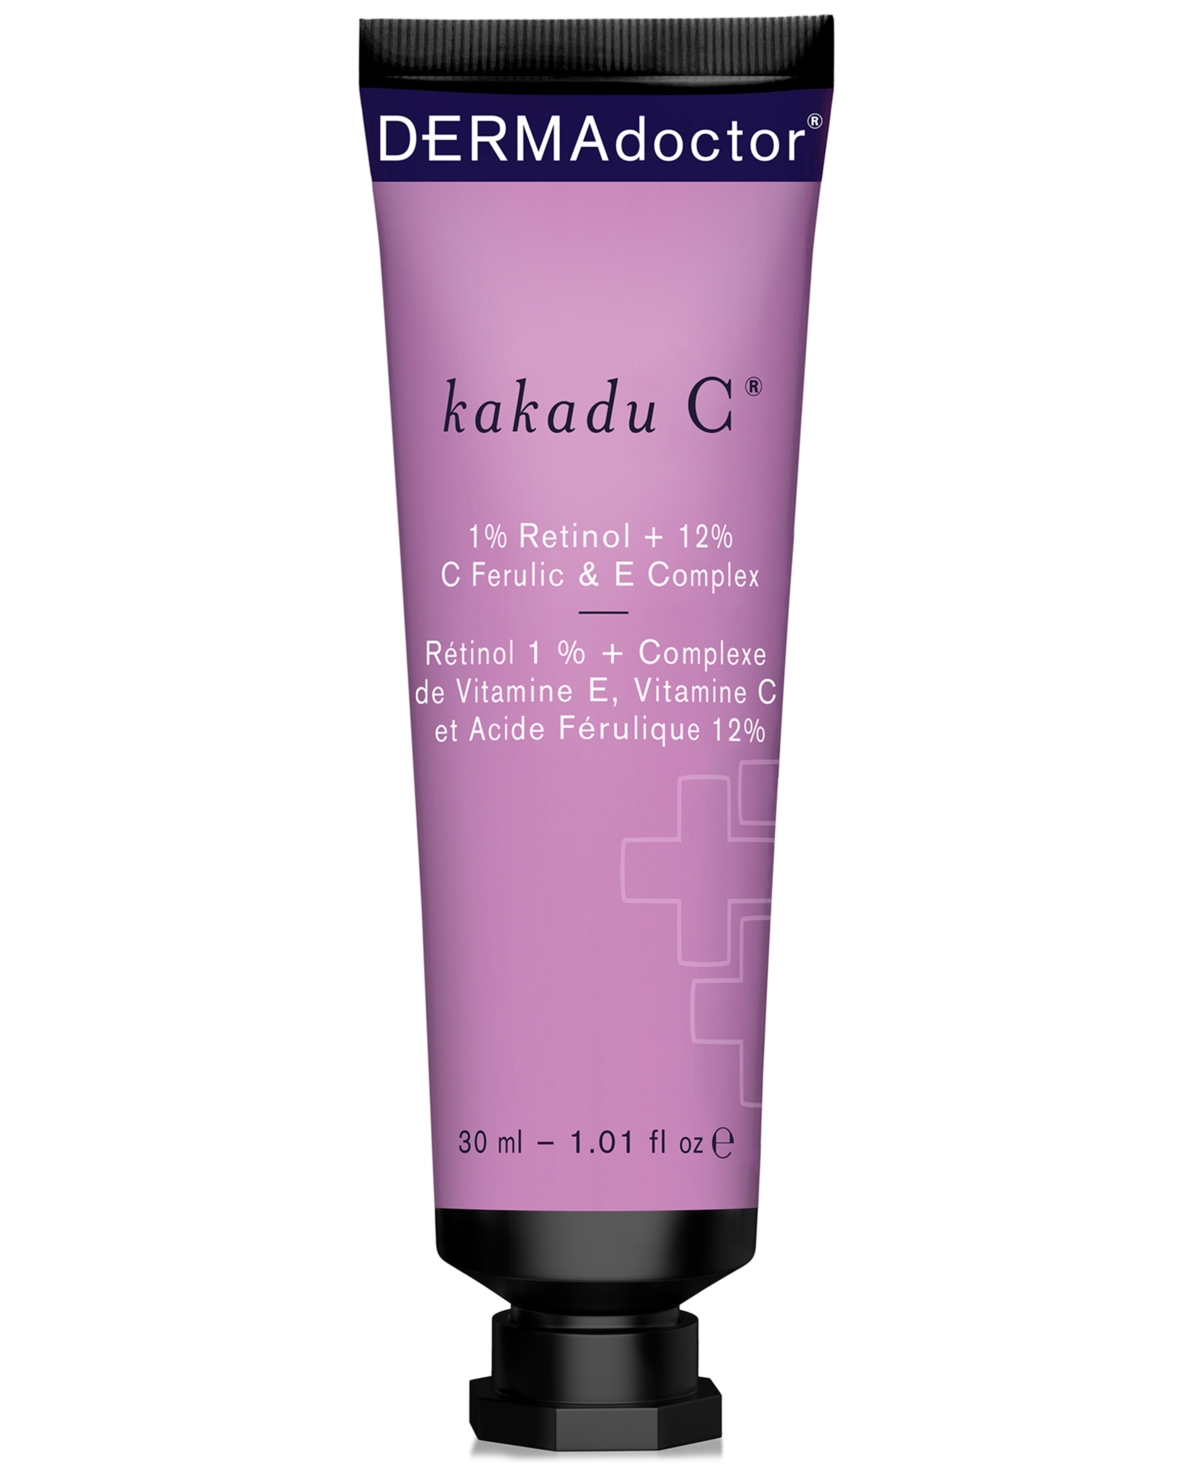 DERMAdoctor Kakadu C 1% Retinol + 12% C Ferulic & E Complex